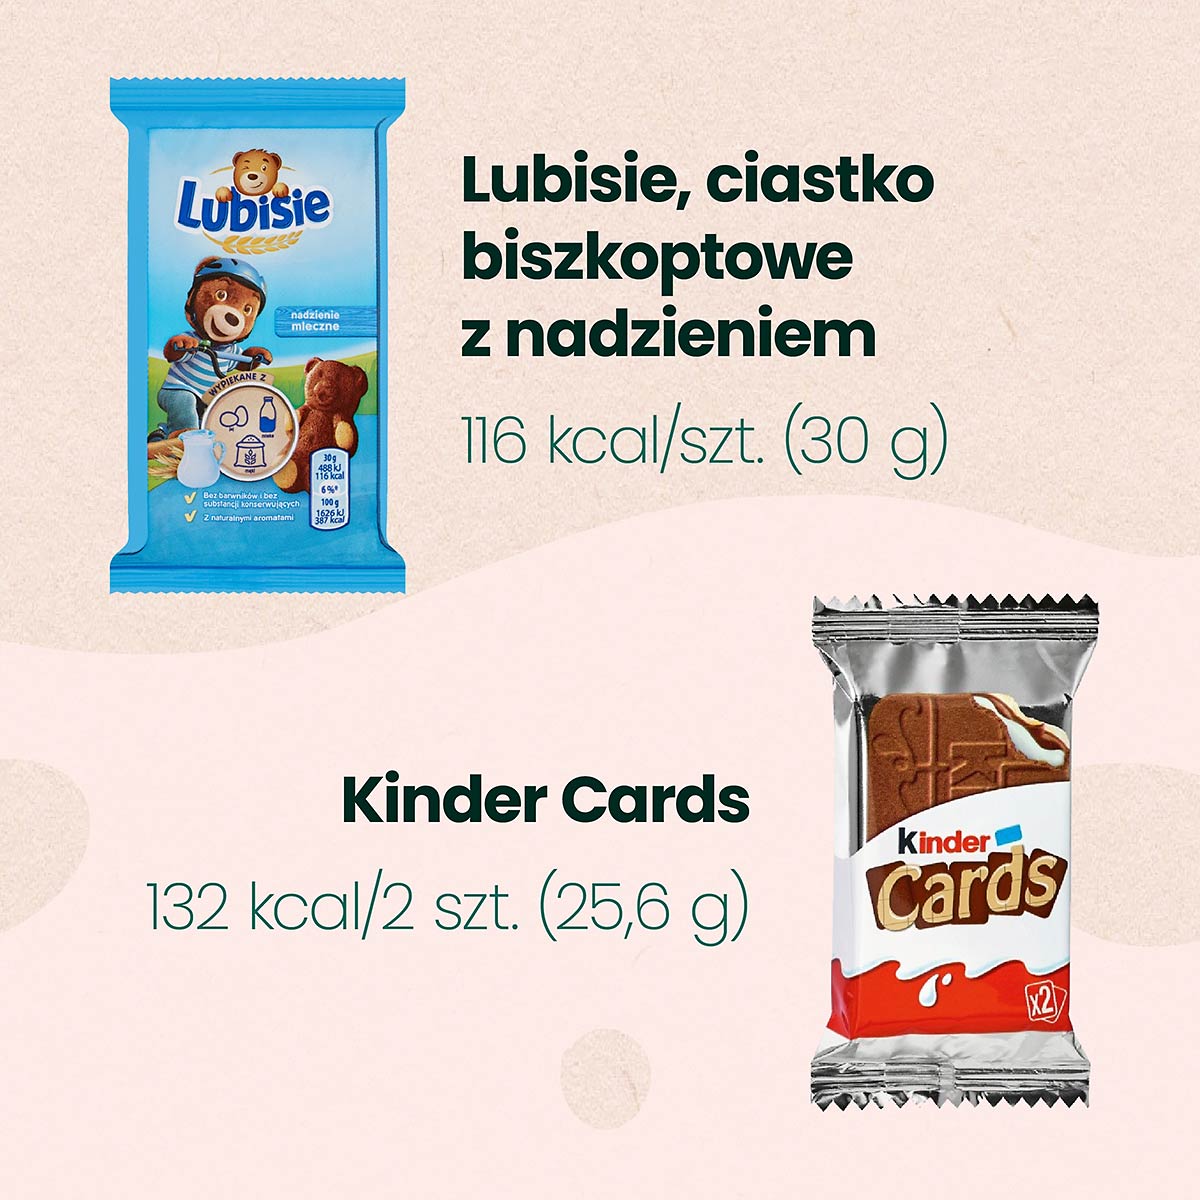 Niskokaloryczne słodycze - ciastka biszkoptowe Lubisie i Kinder Cards